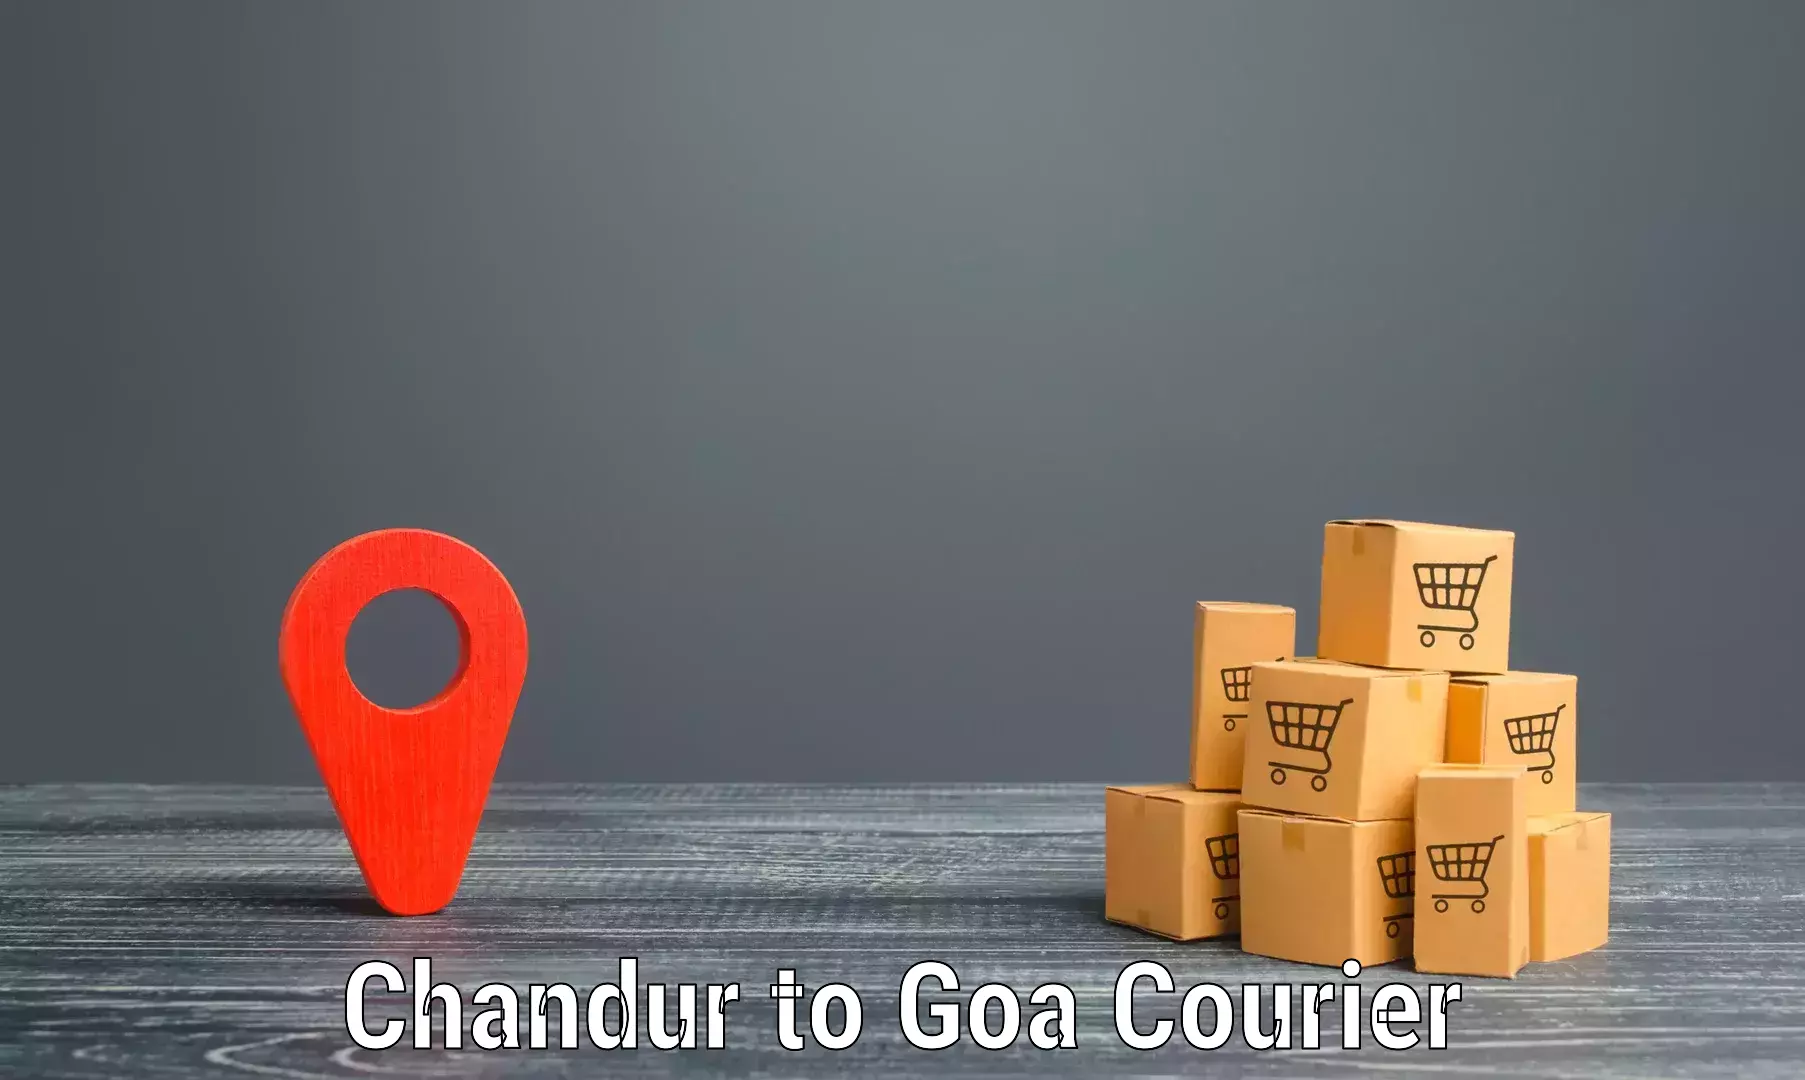 Efficient parcel service Chandur to Goa